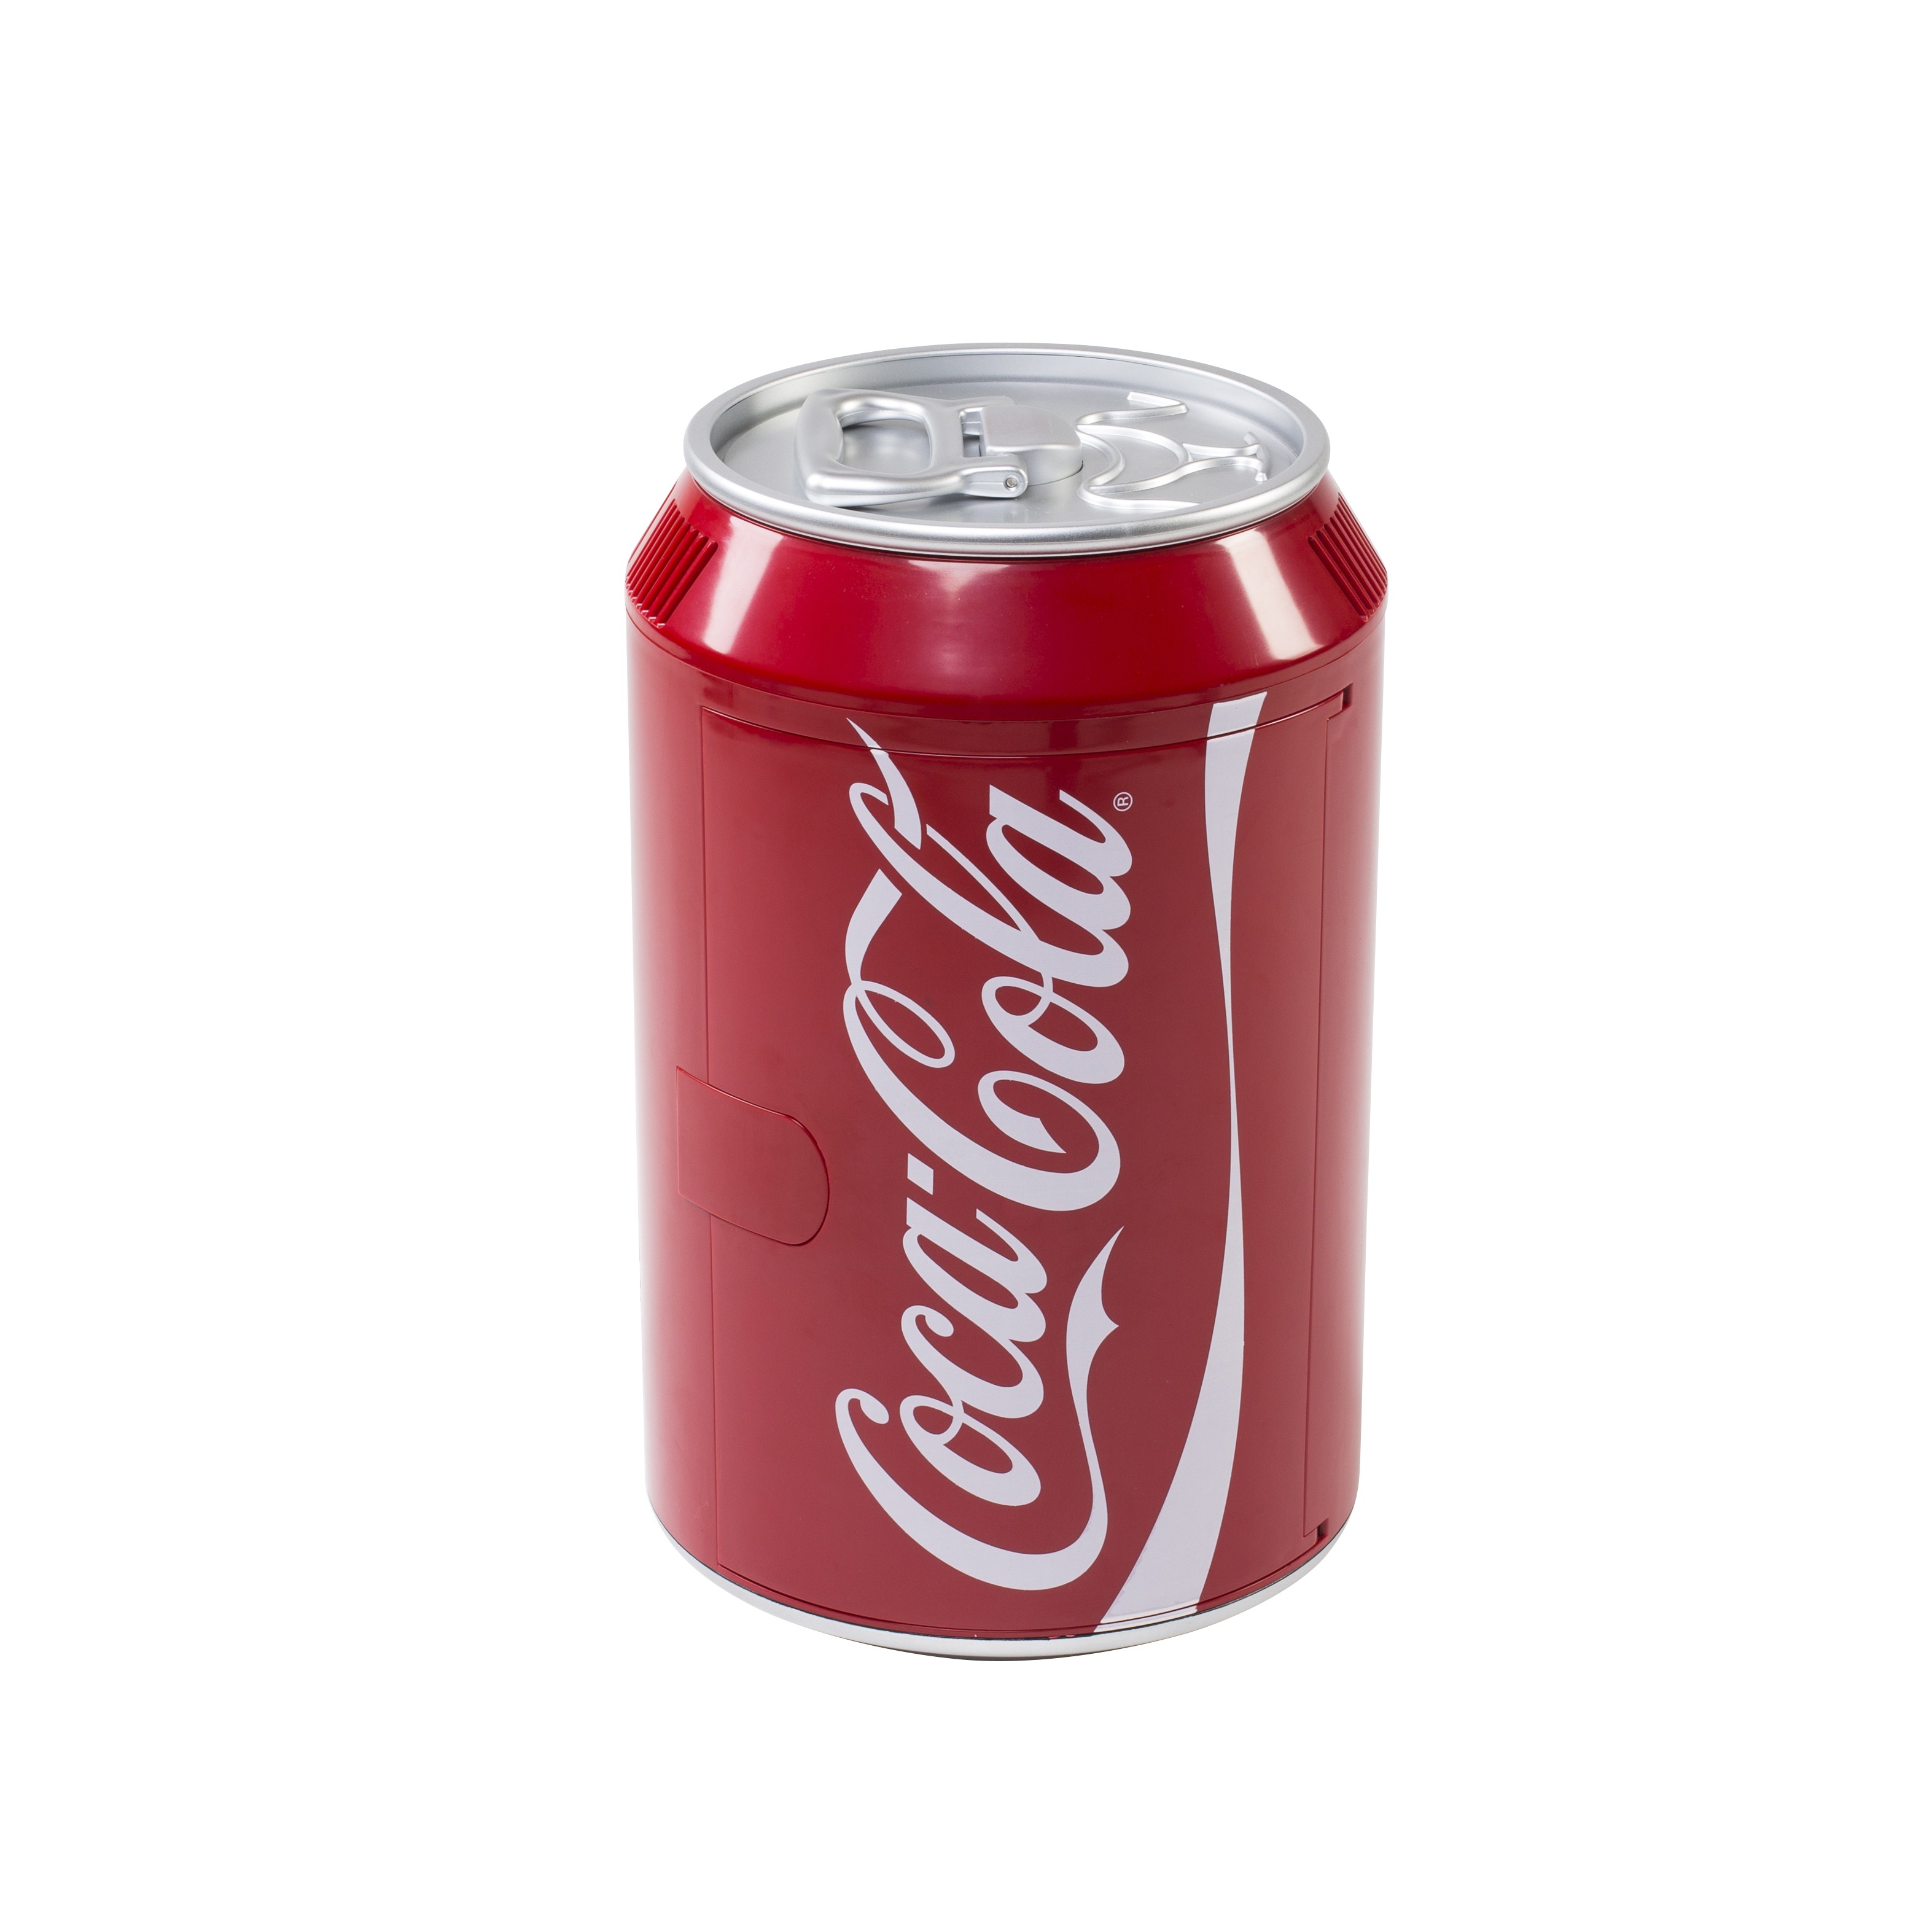 Handgefertigter 1:12 Miniatur Coca Cola Kühlschrank mit leichter